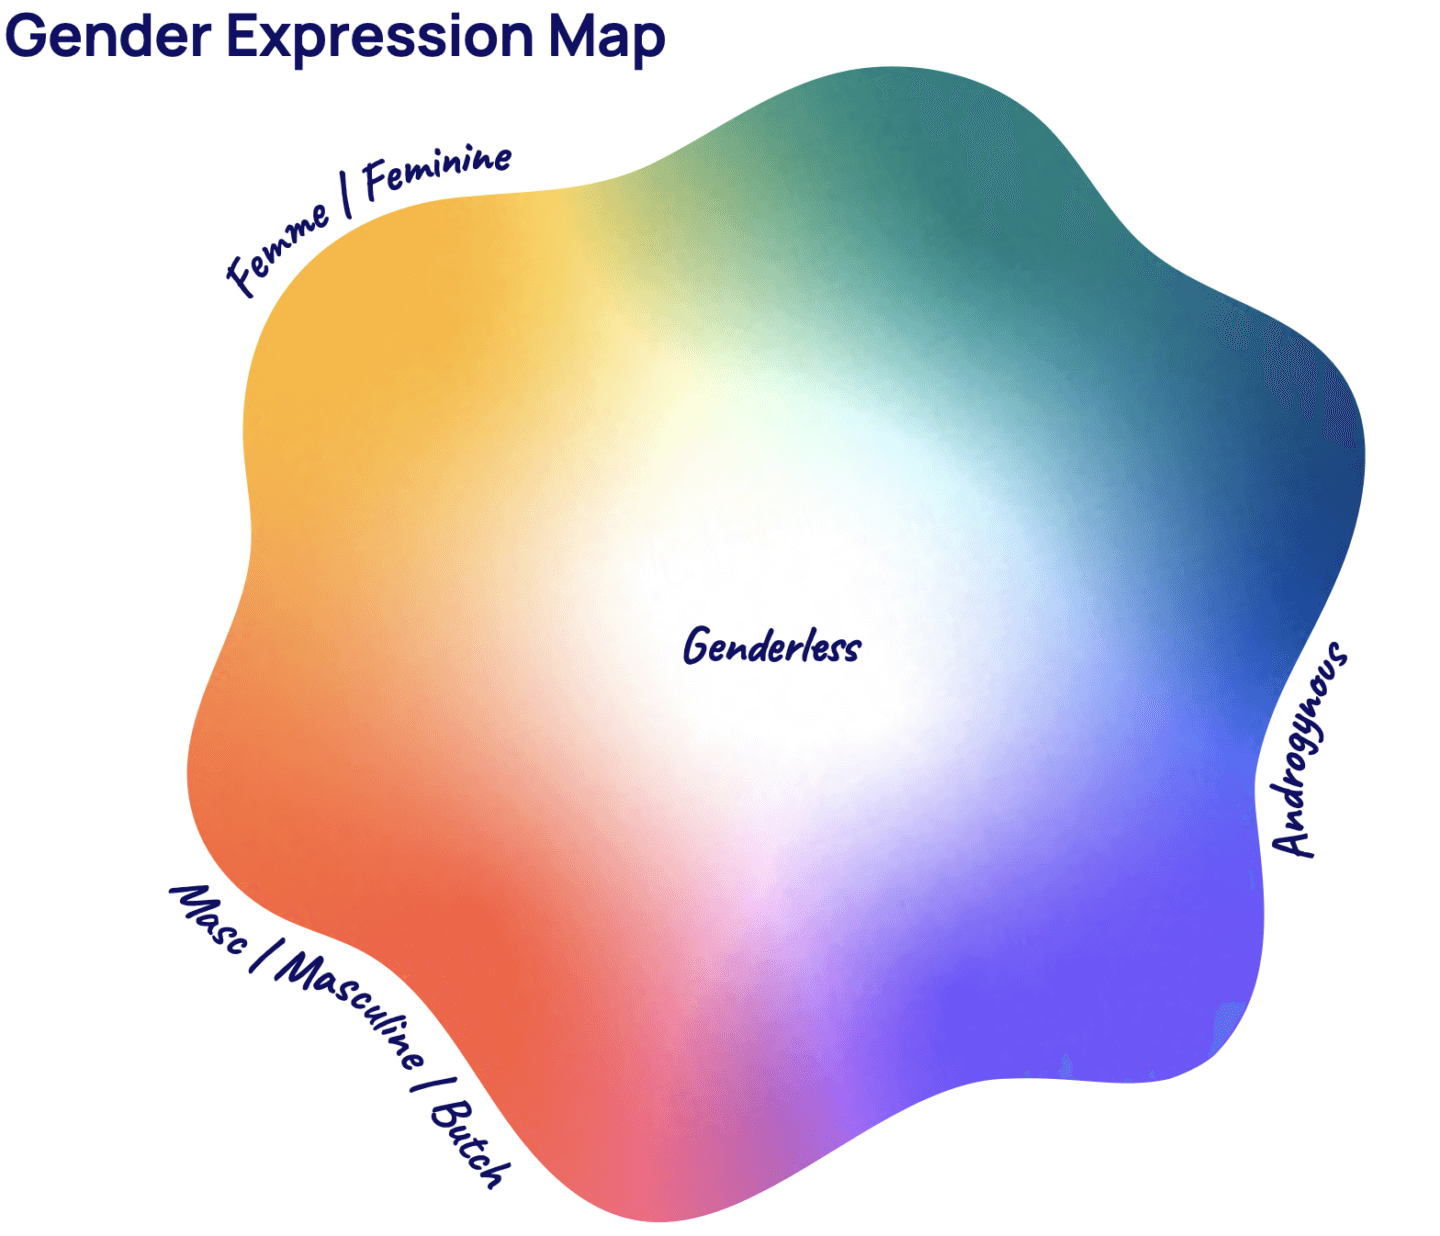 Gender expression map